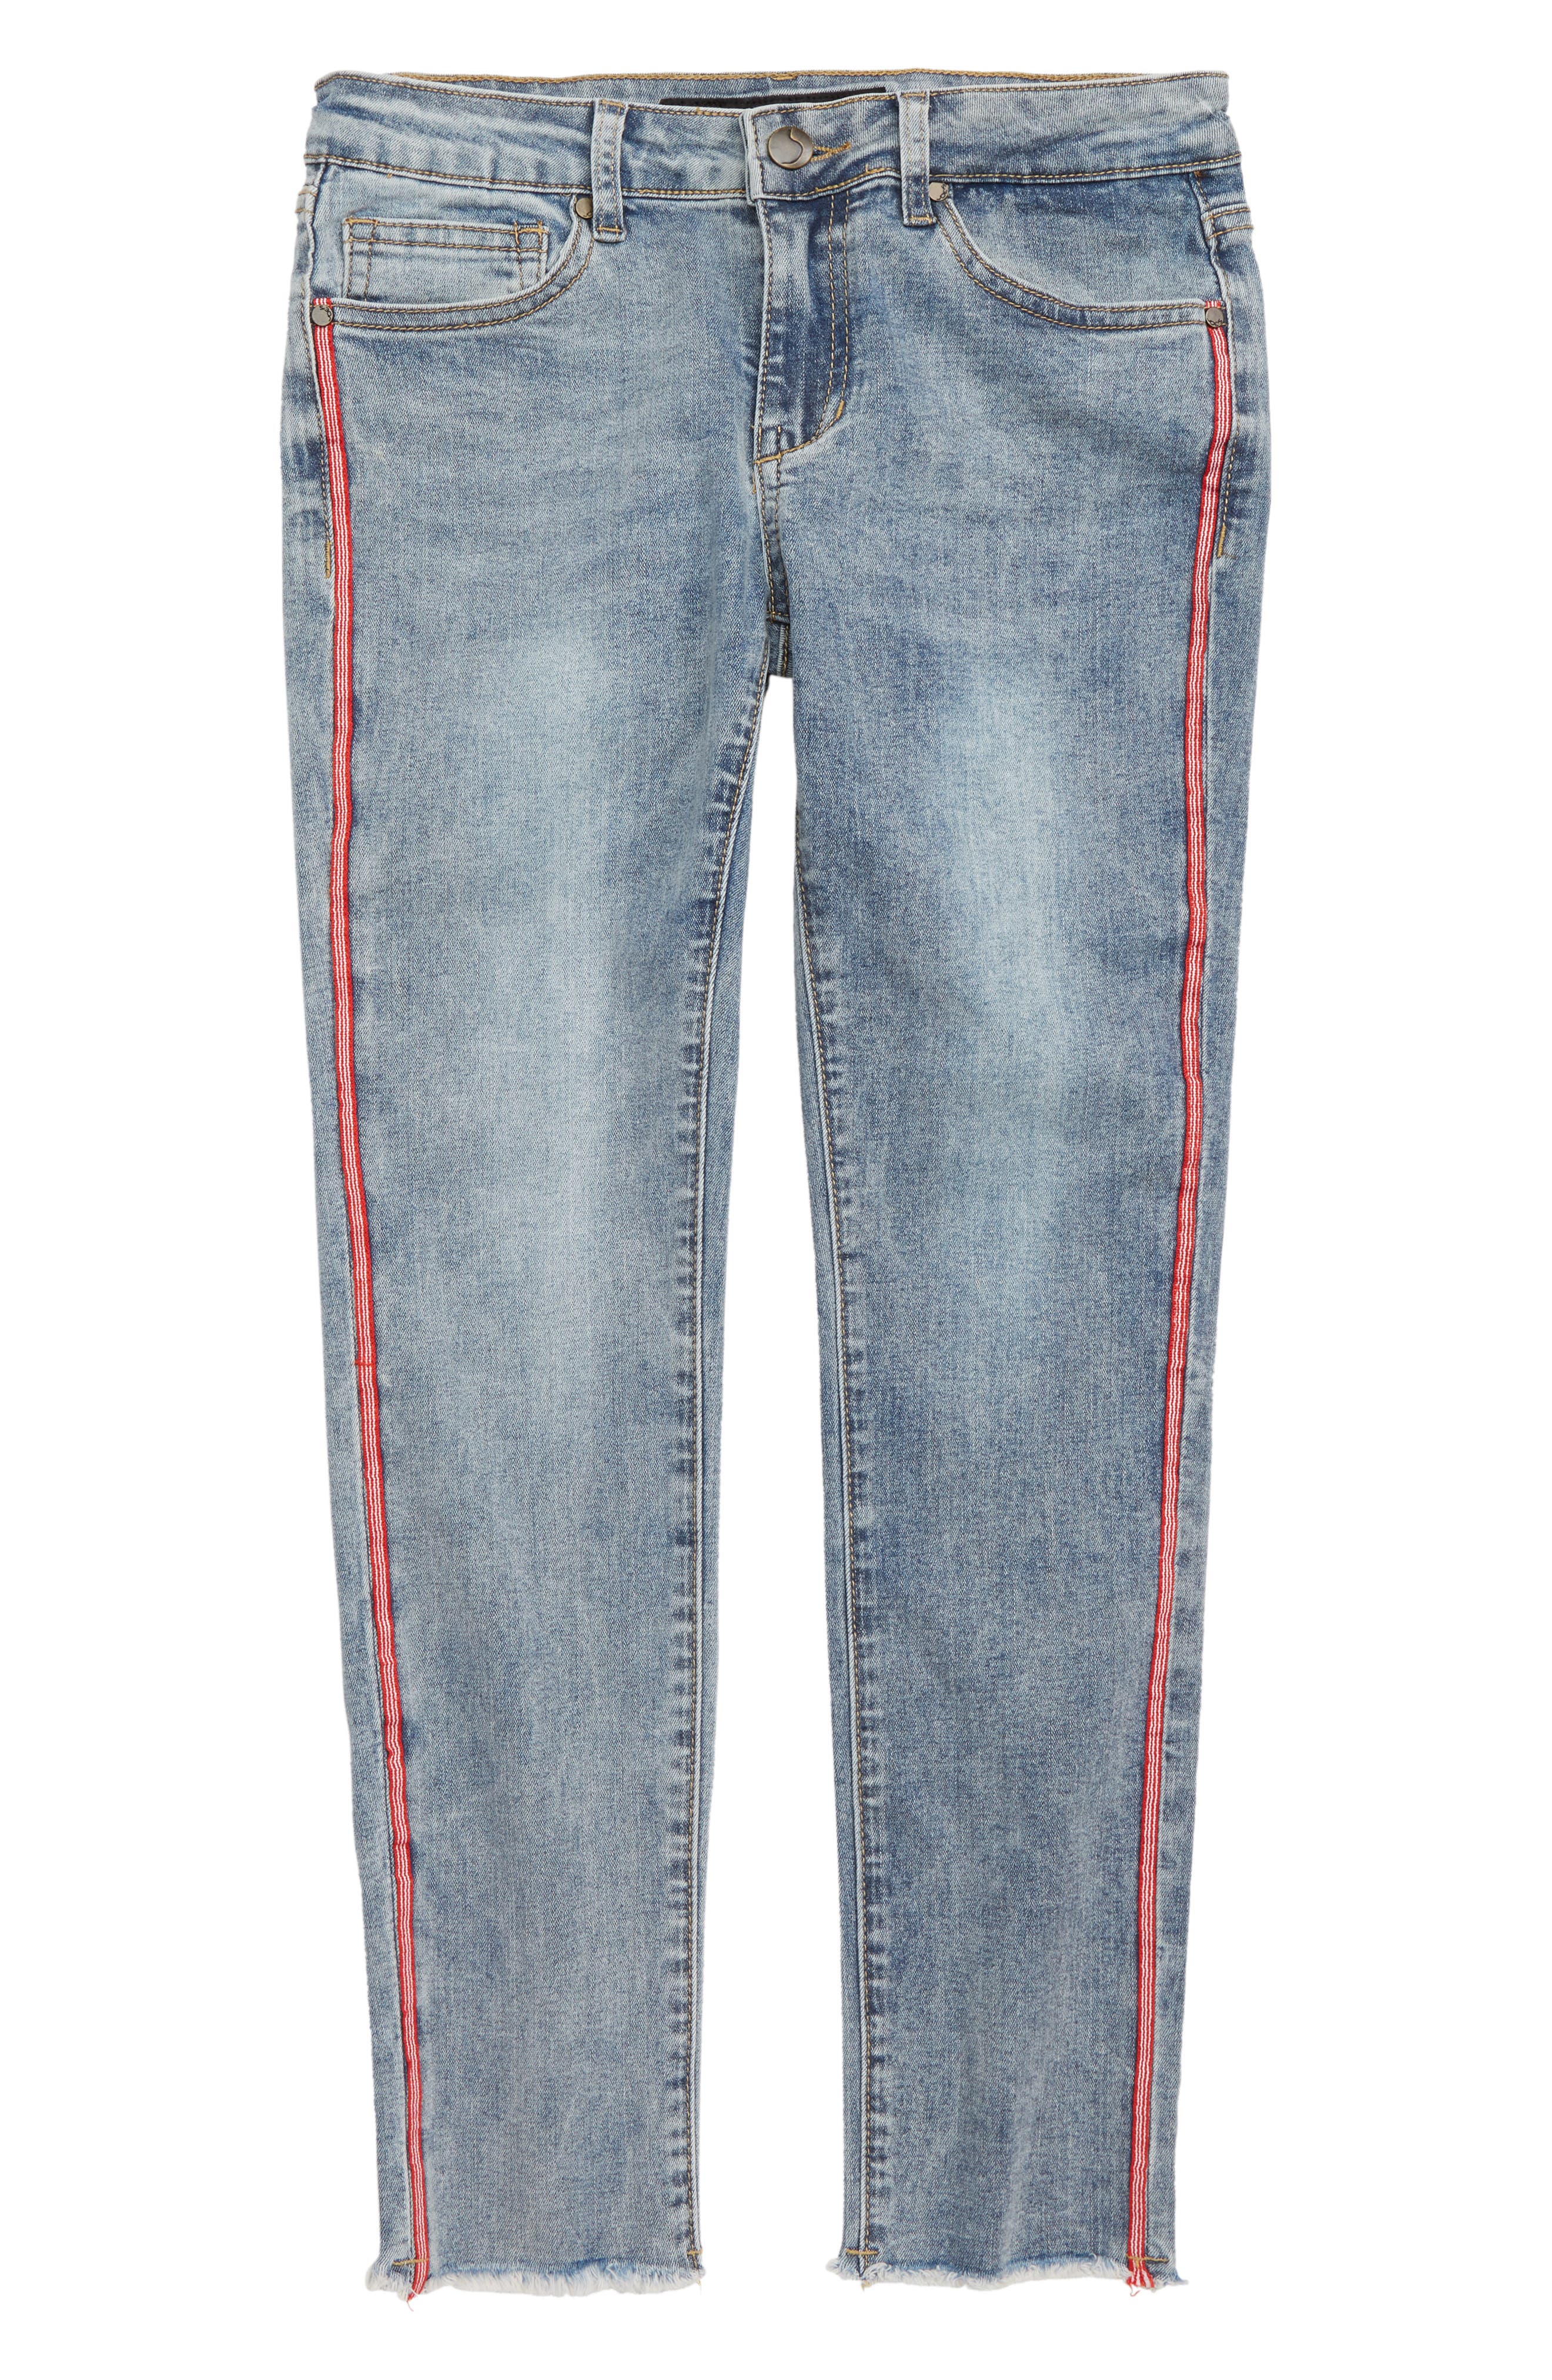 nordstrom rack jeans